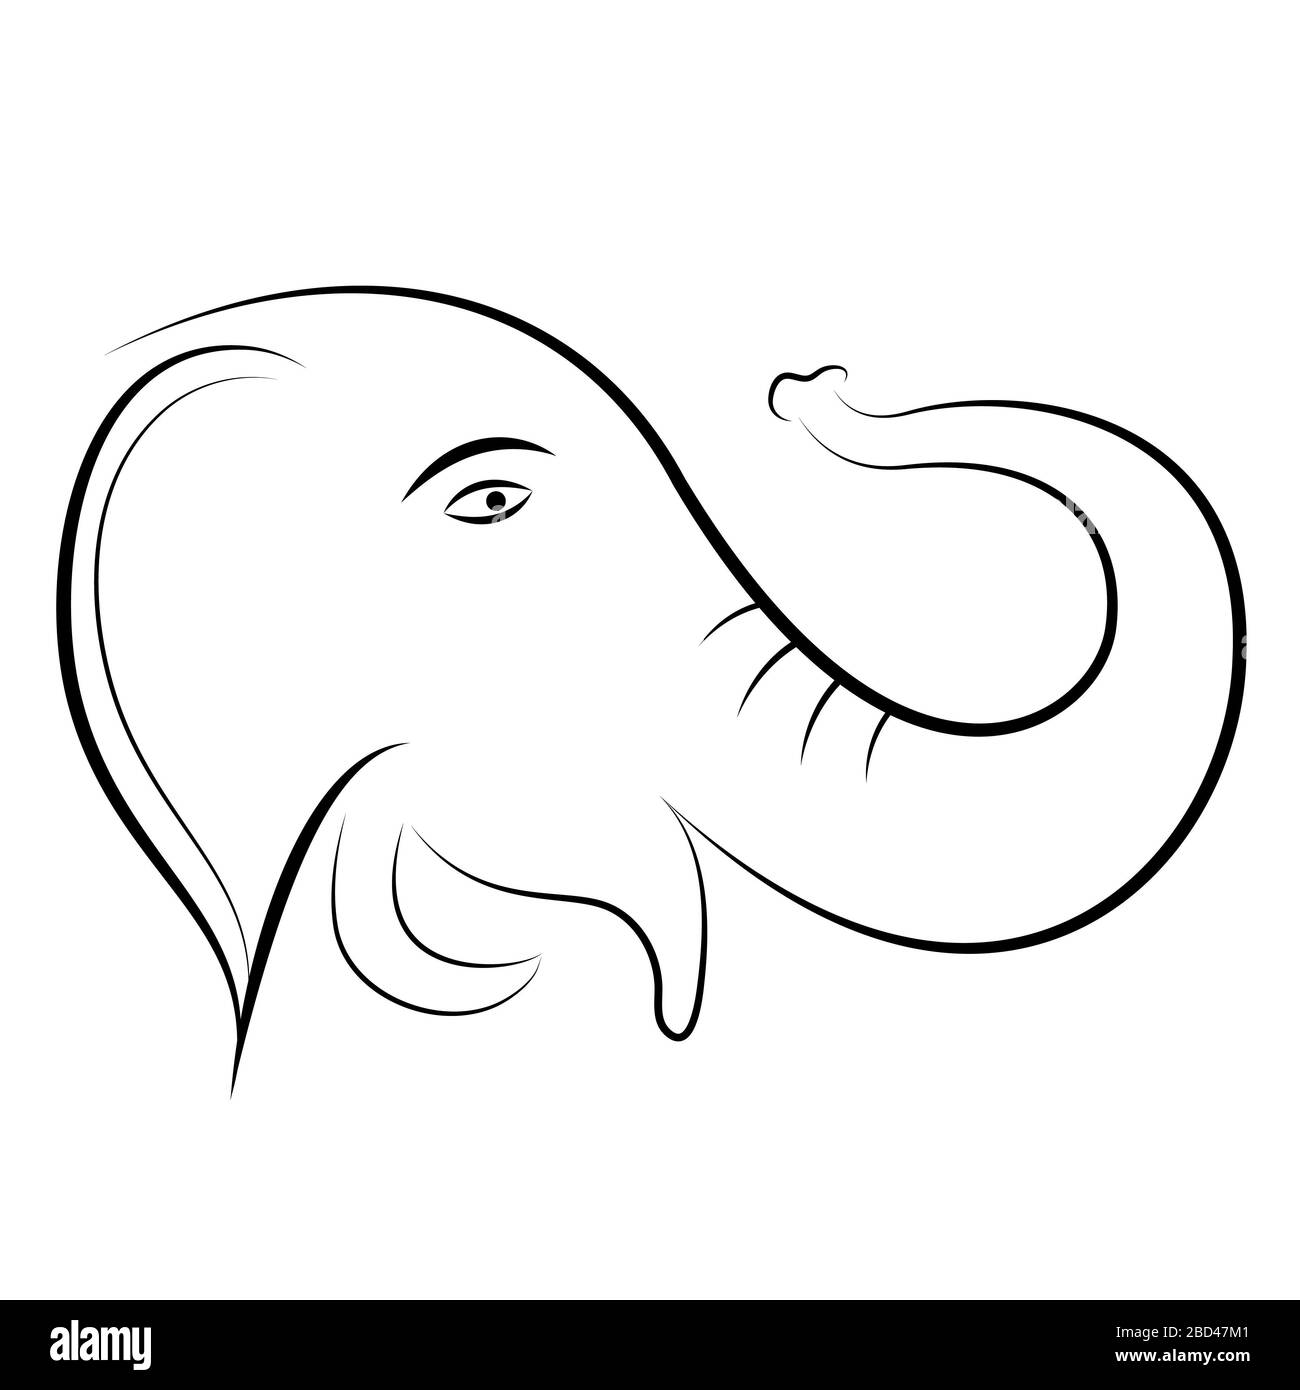 Elephant shape - outline Stock Photo